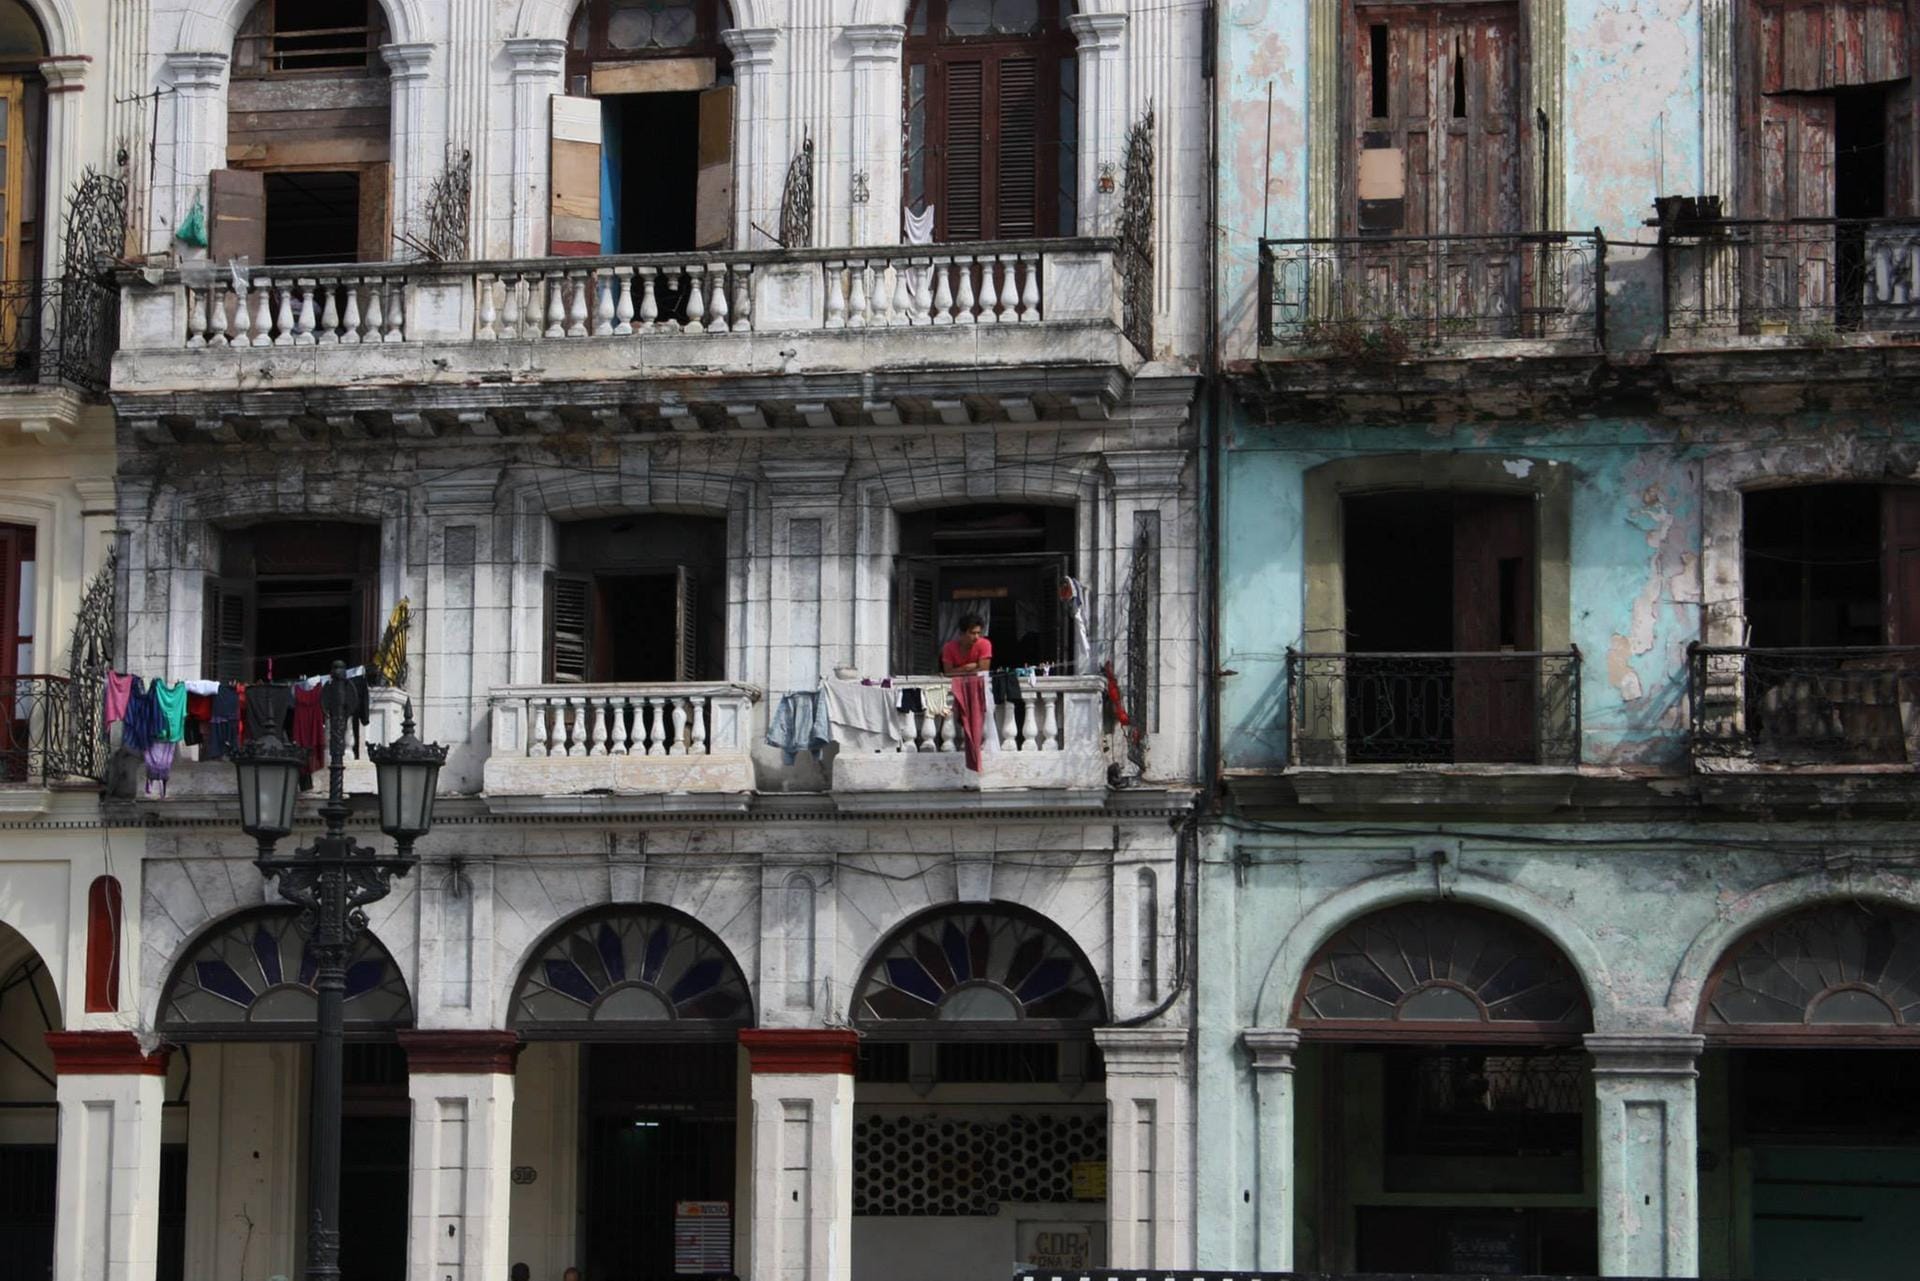 Viele Touristen kommen wegen des morbiden Charmes nach Kuba. Der Übergang zu "Bruchbuden" ist jedoch fließend.